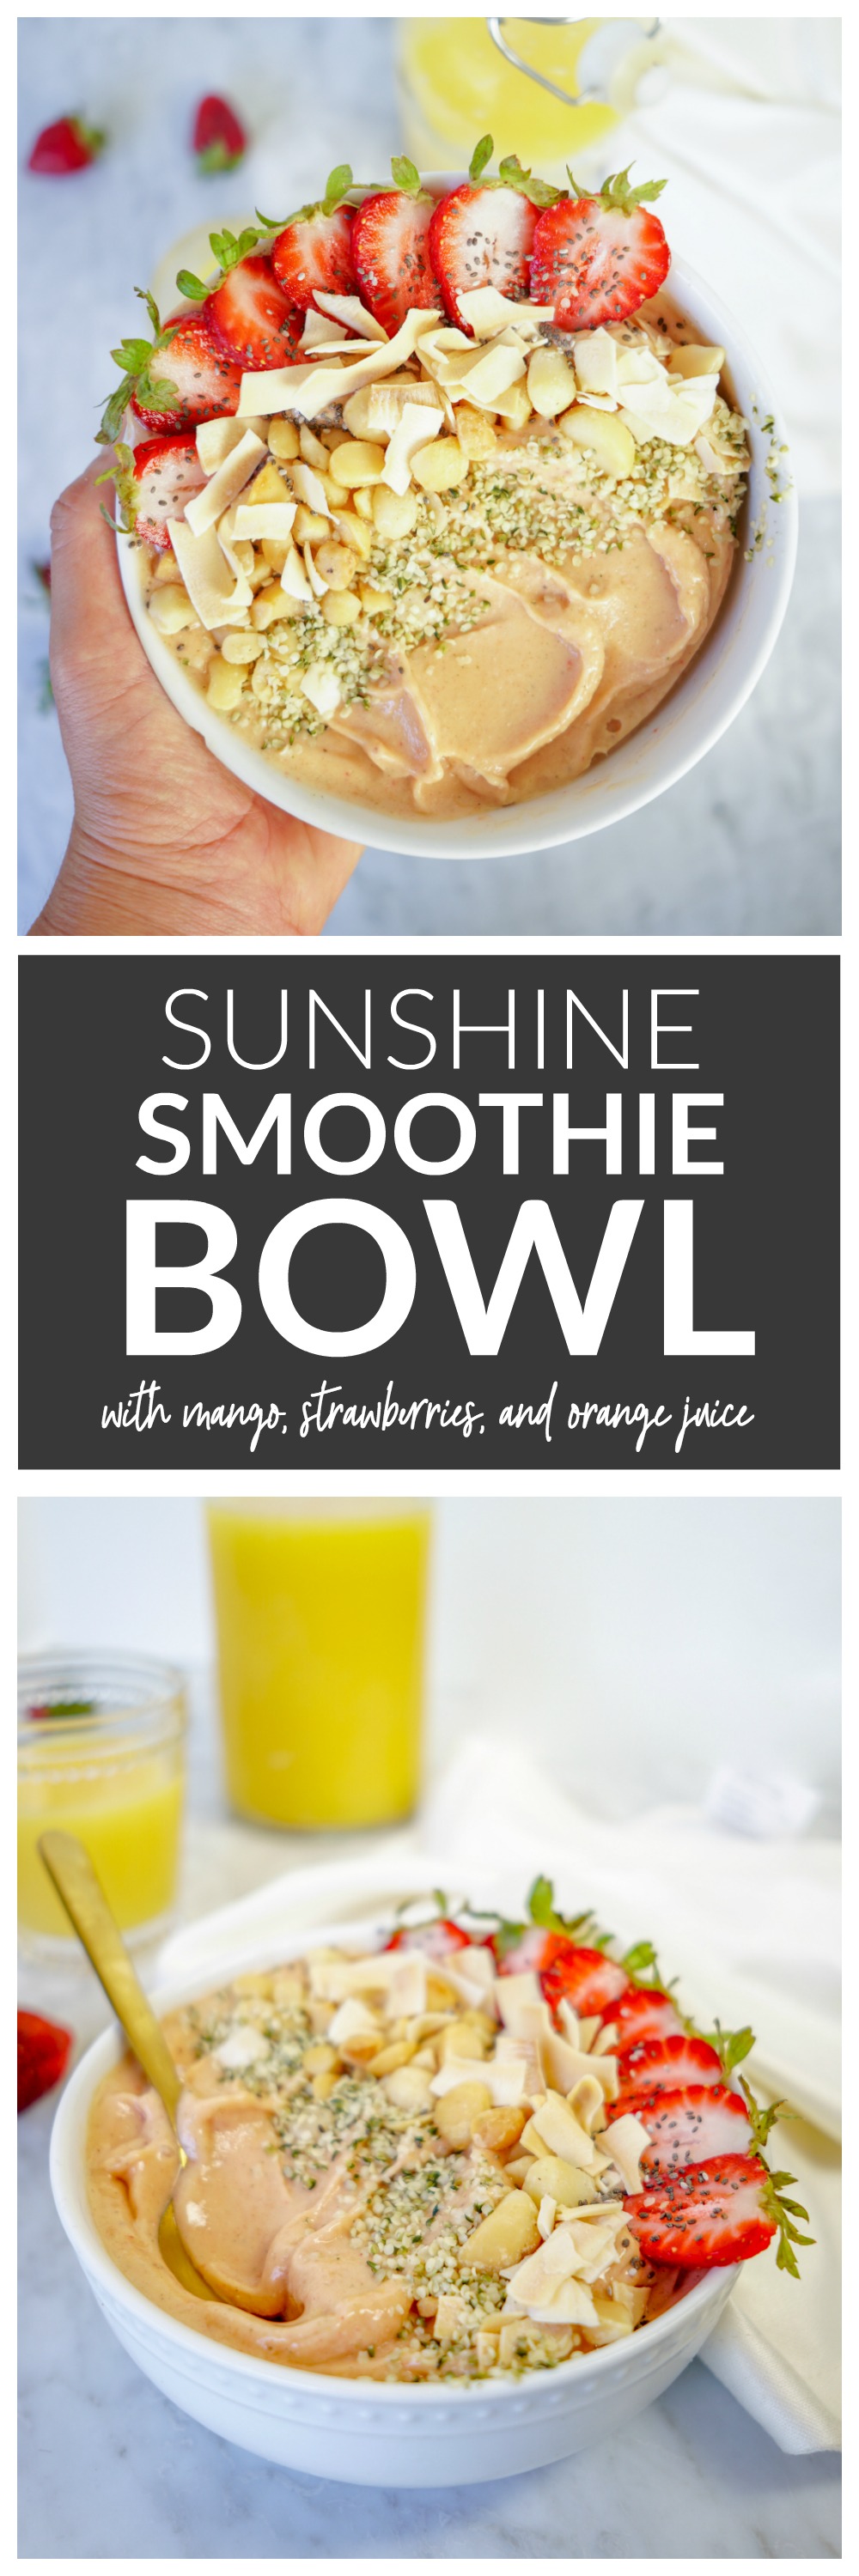 Sunshine Smoothie Bowl - with mangoes, strawberries, banana, and orange juice.